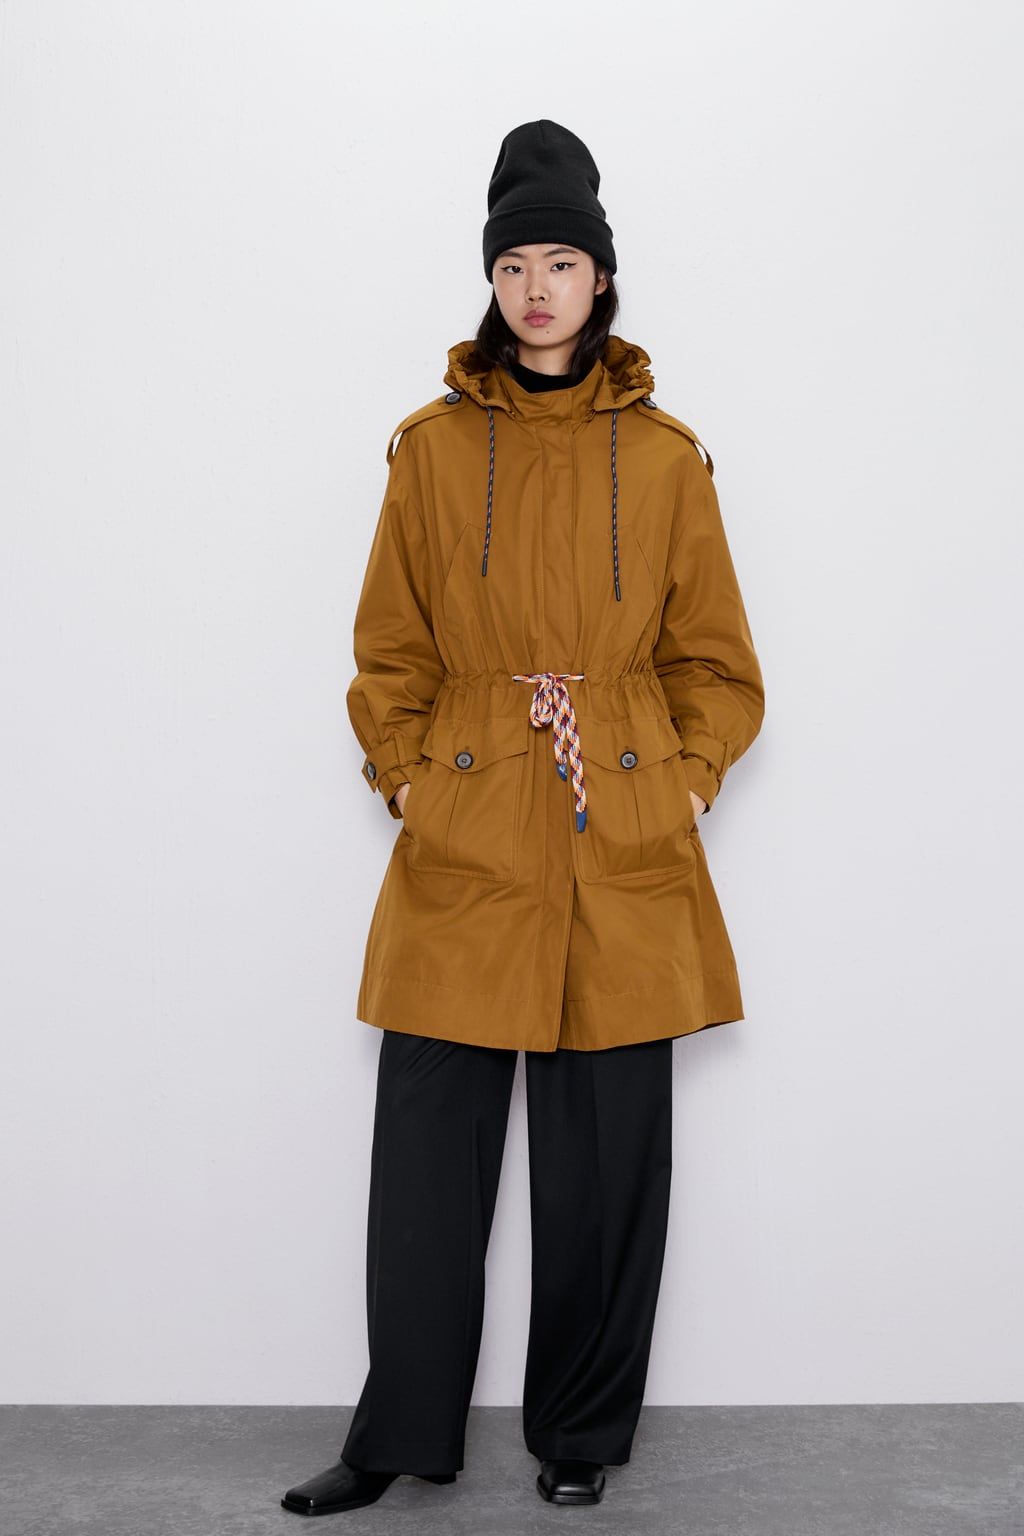 Zara coats - best Zara winter coats for 